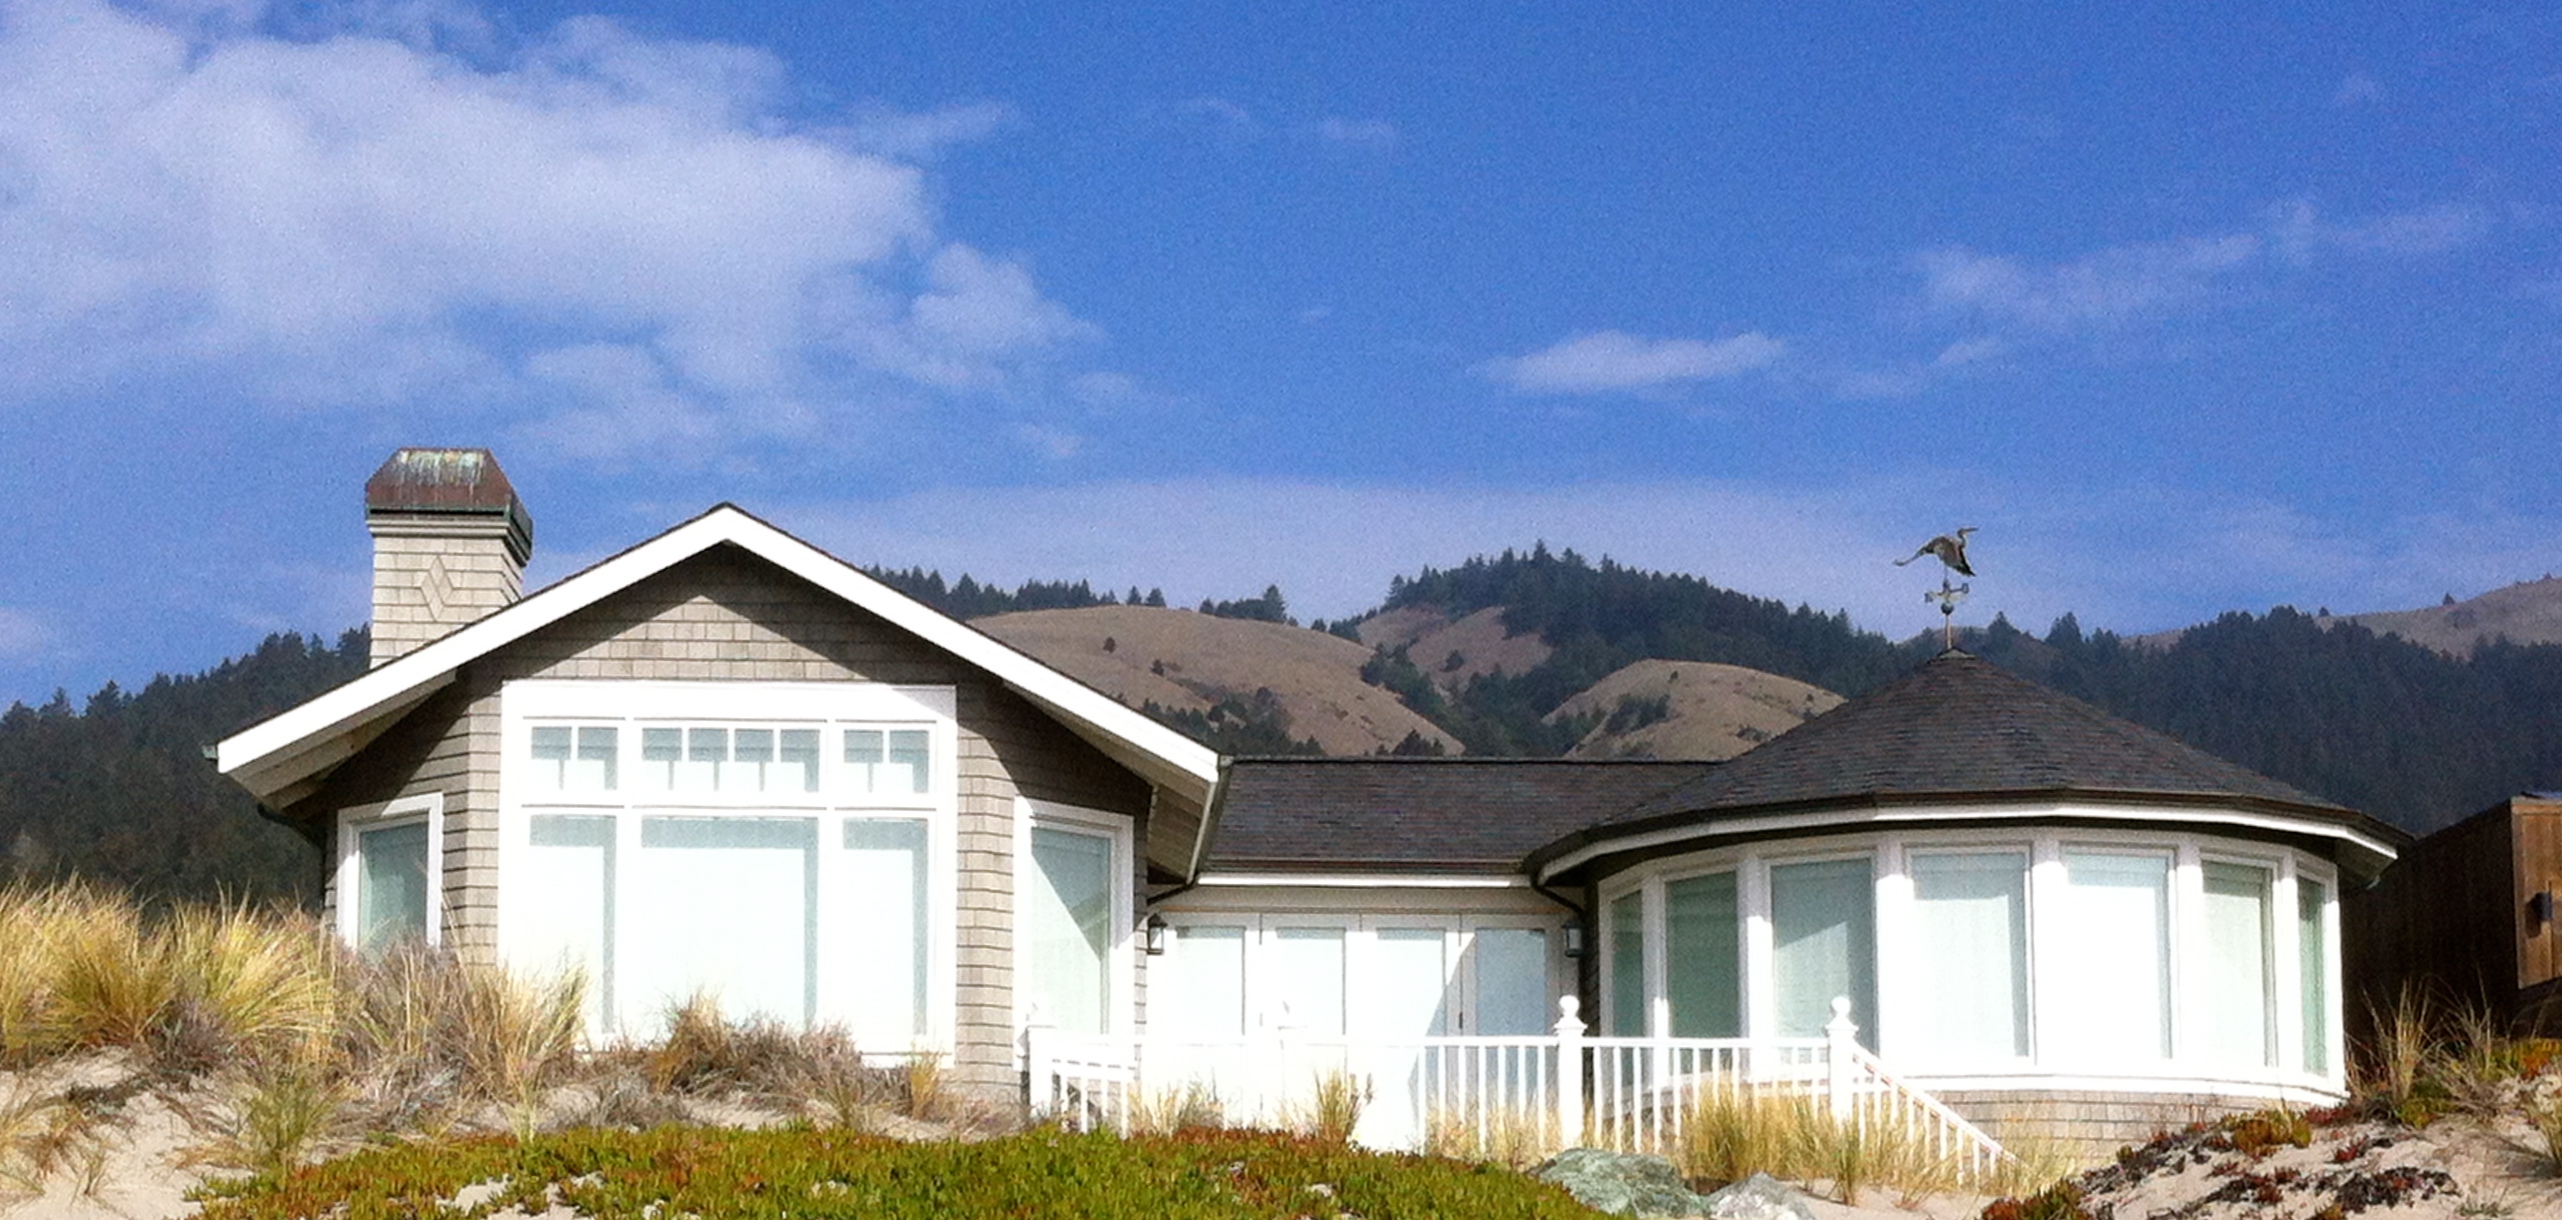 House on Stinson Beach Marin County California